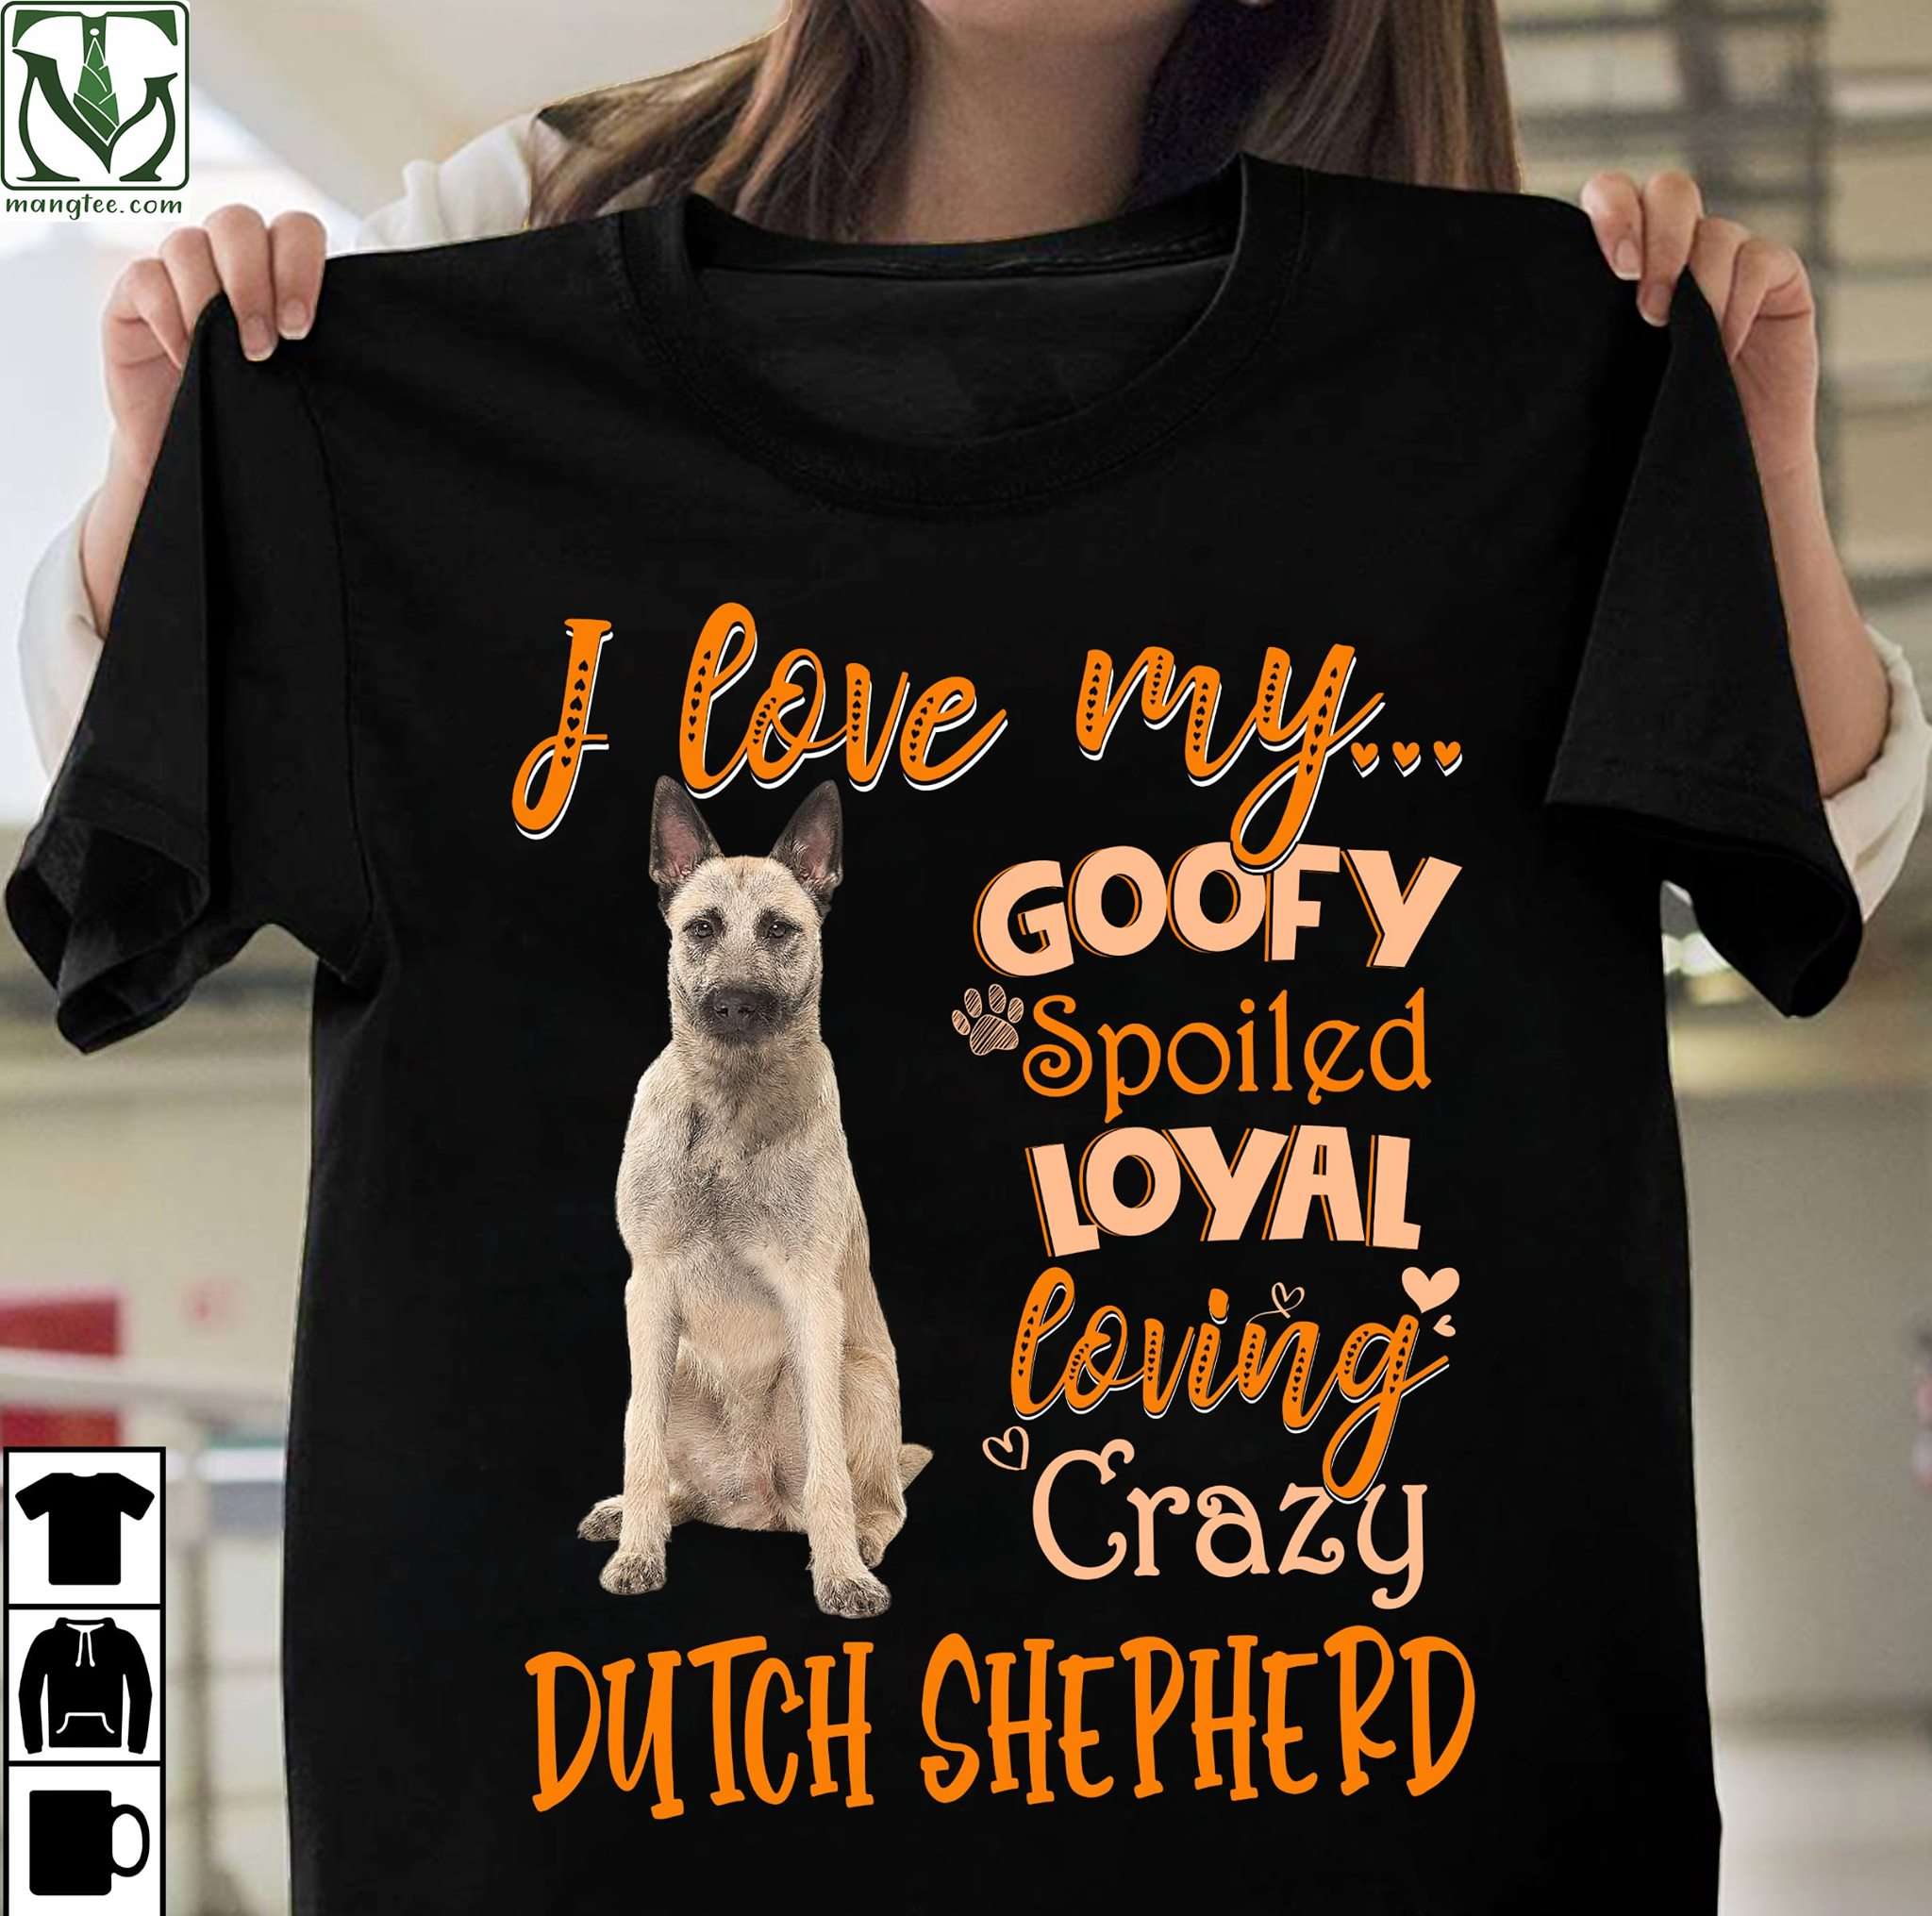 I love my goofy spoiled loyal loving crazy Dutch Shepherd - Dutch shepherd dog